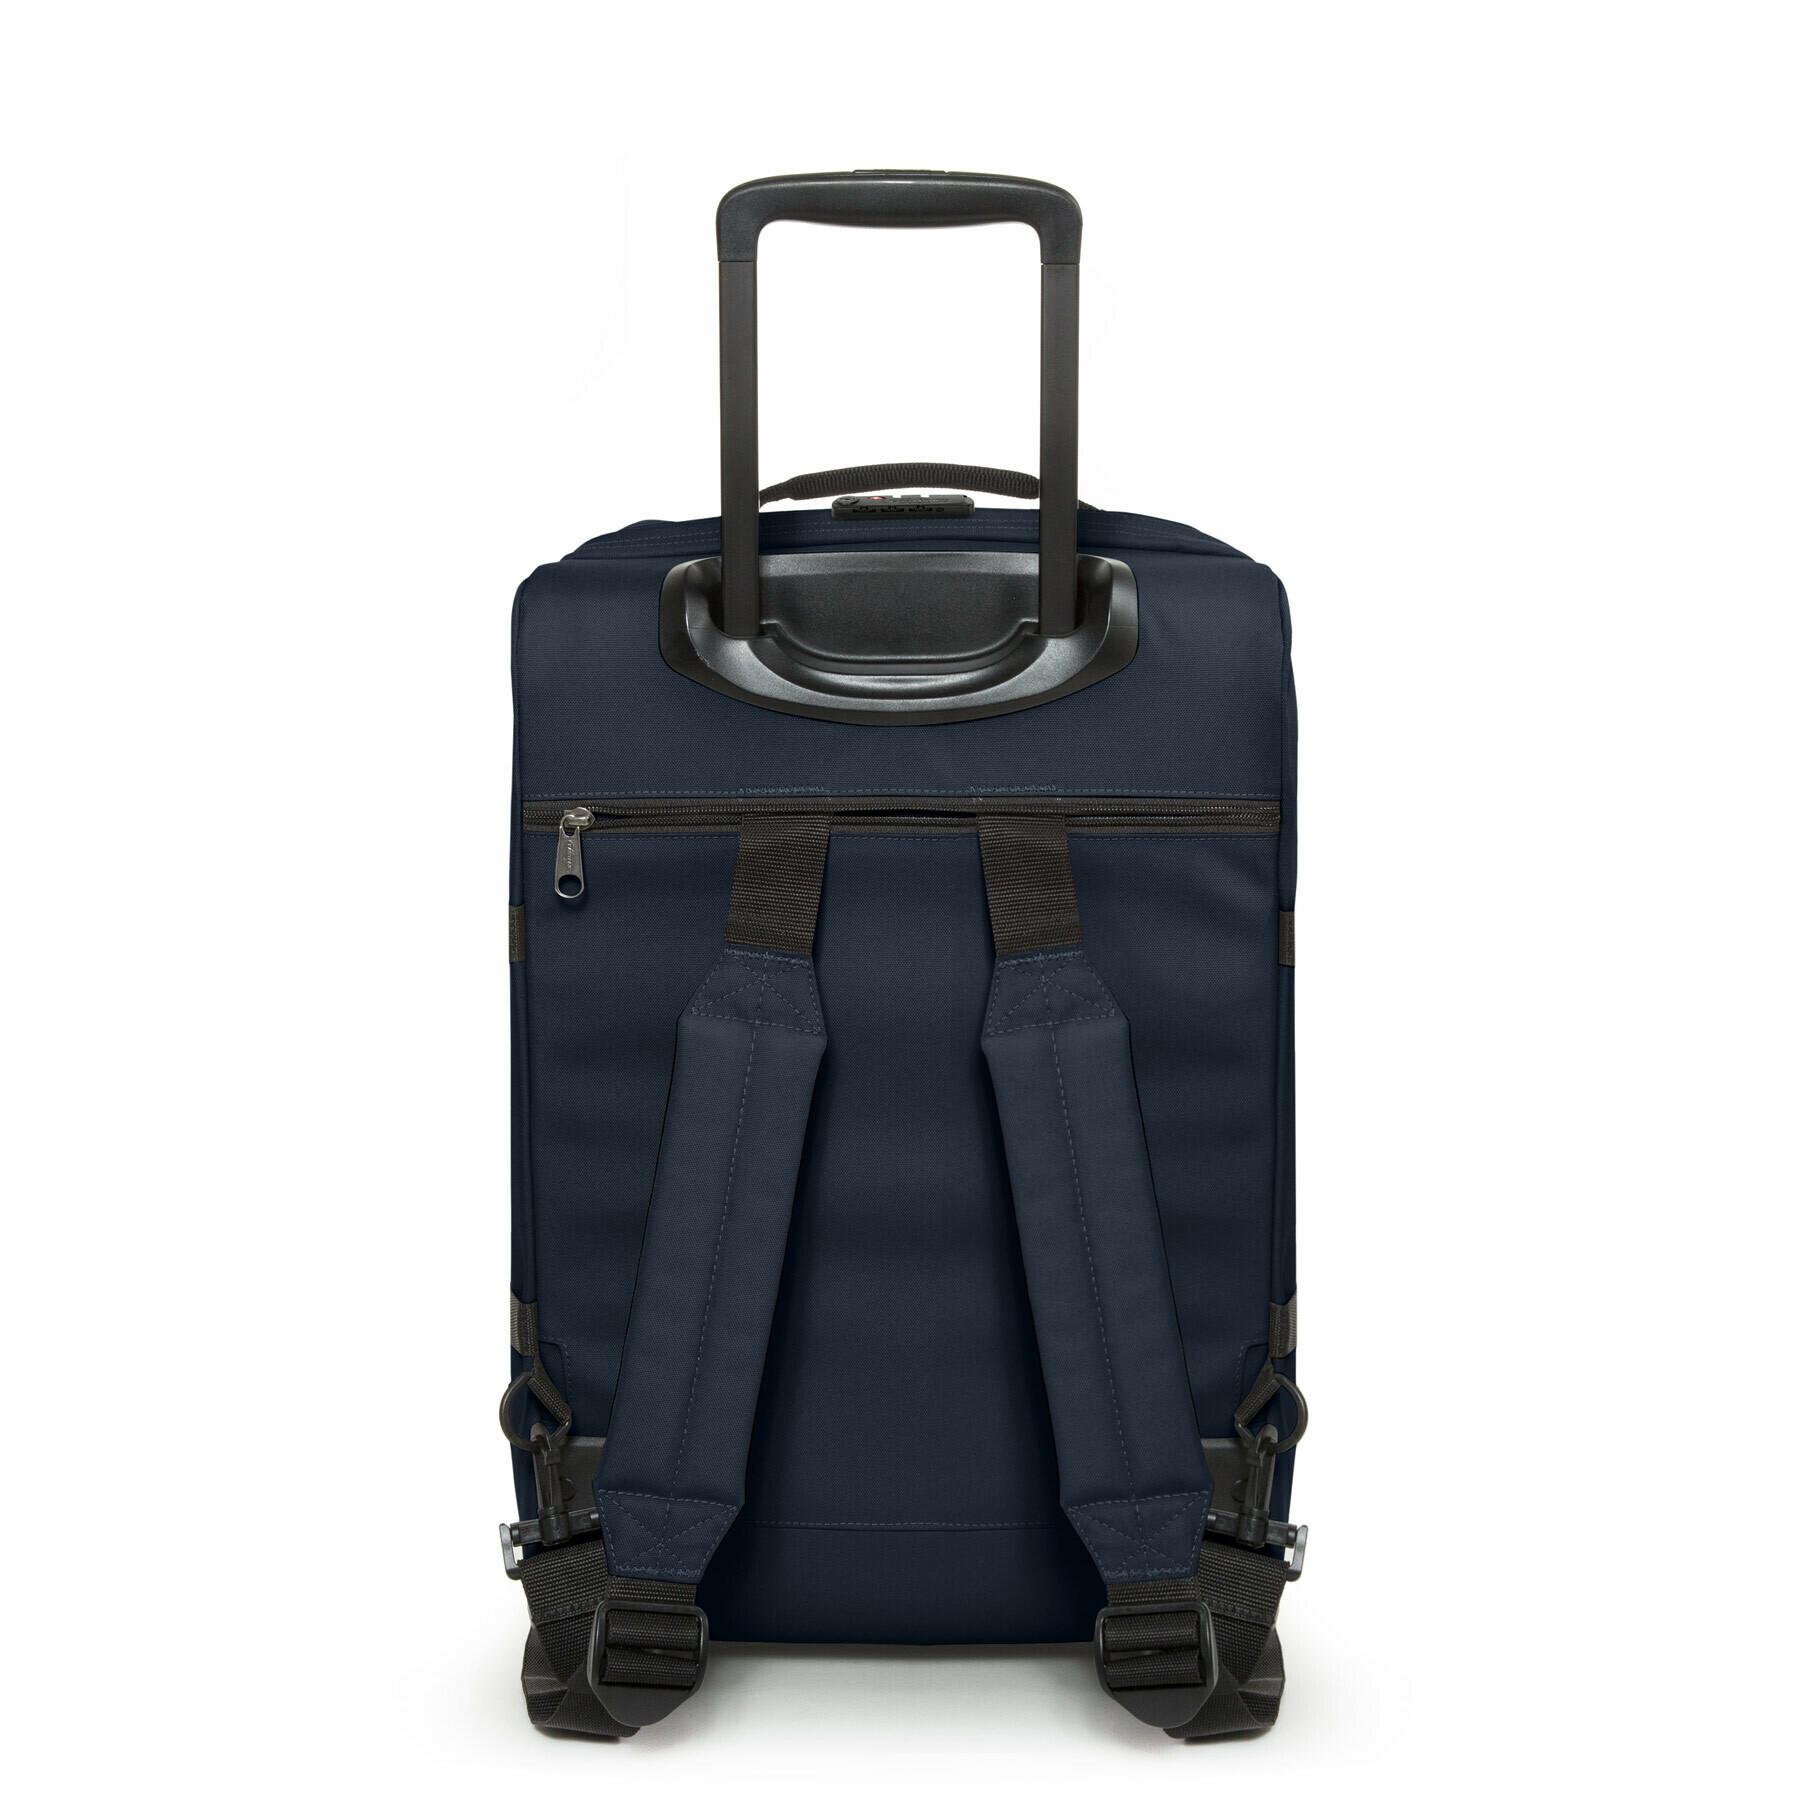 Travel bag Eastpak Strapverz